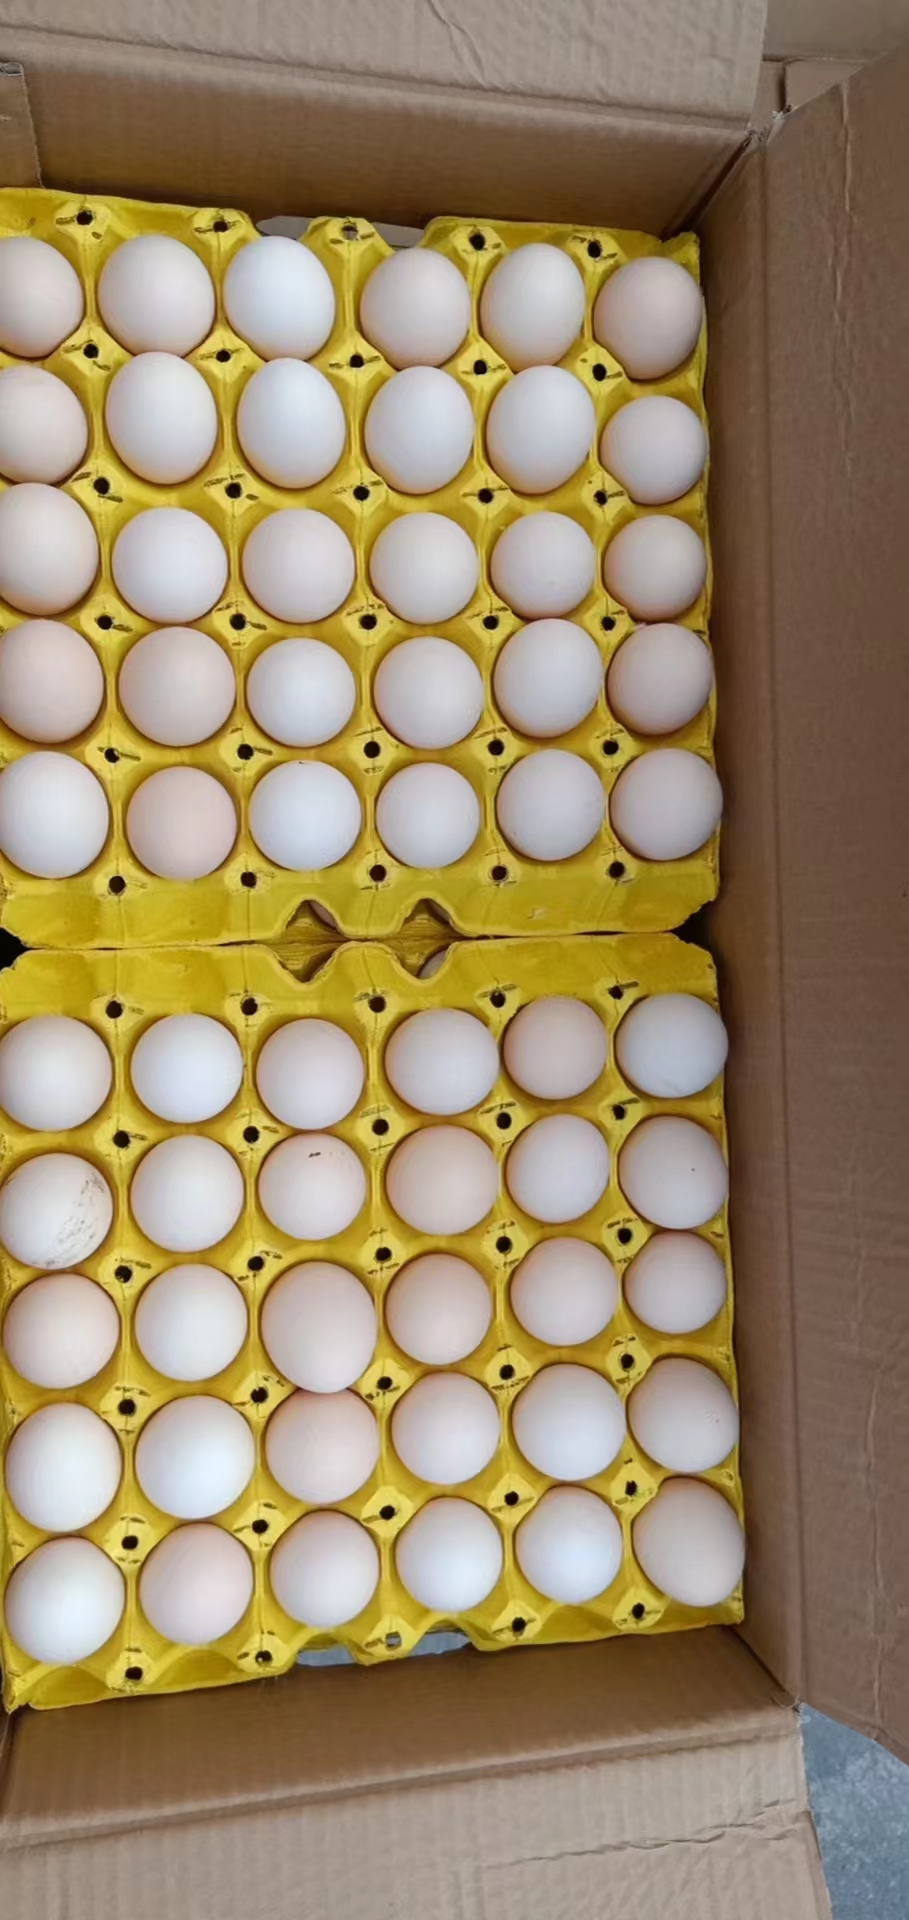 [粉壳蛋批发]源头产地新鲜鸡蛋价格176元/箱 